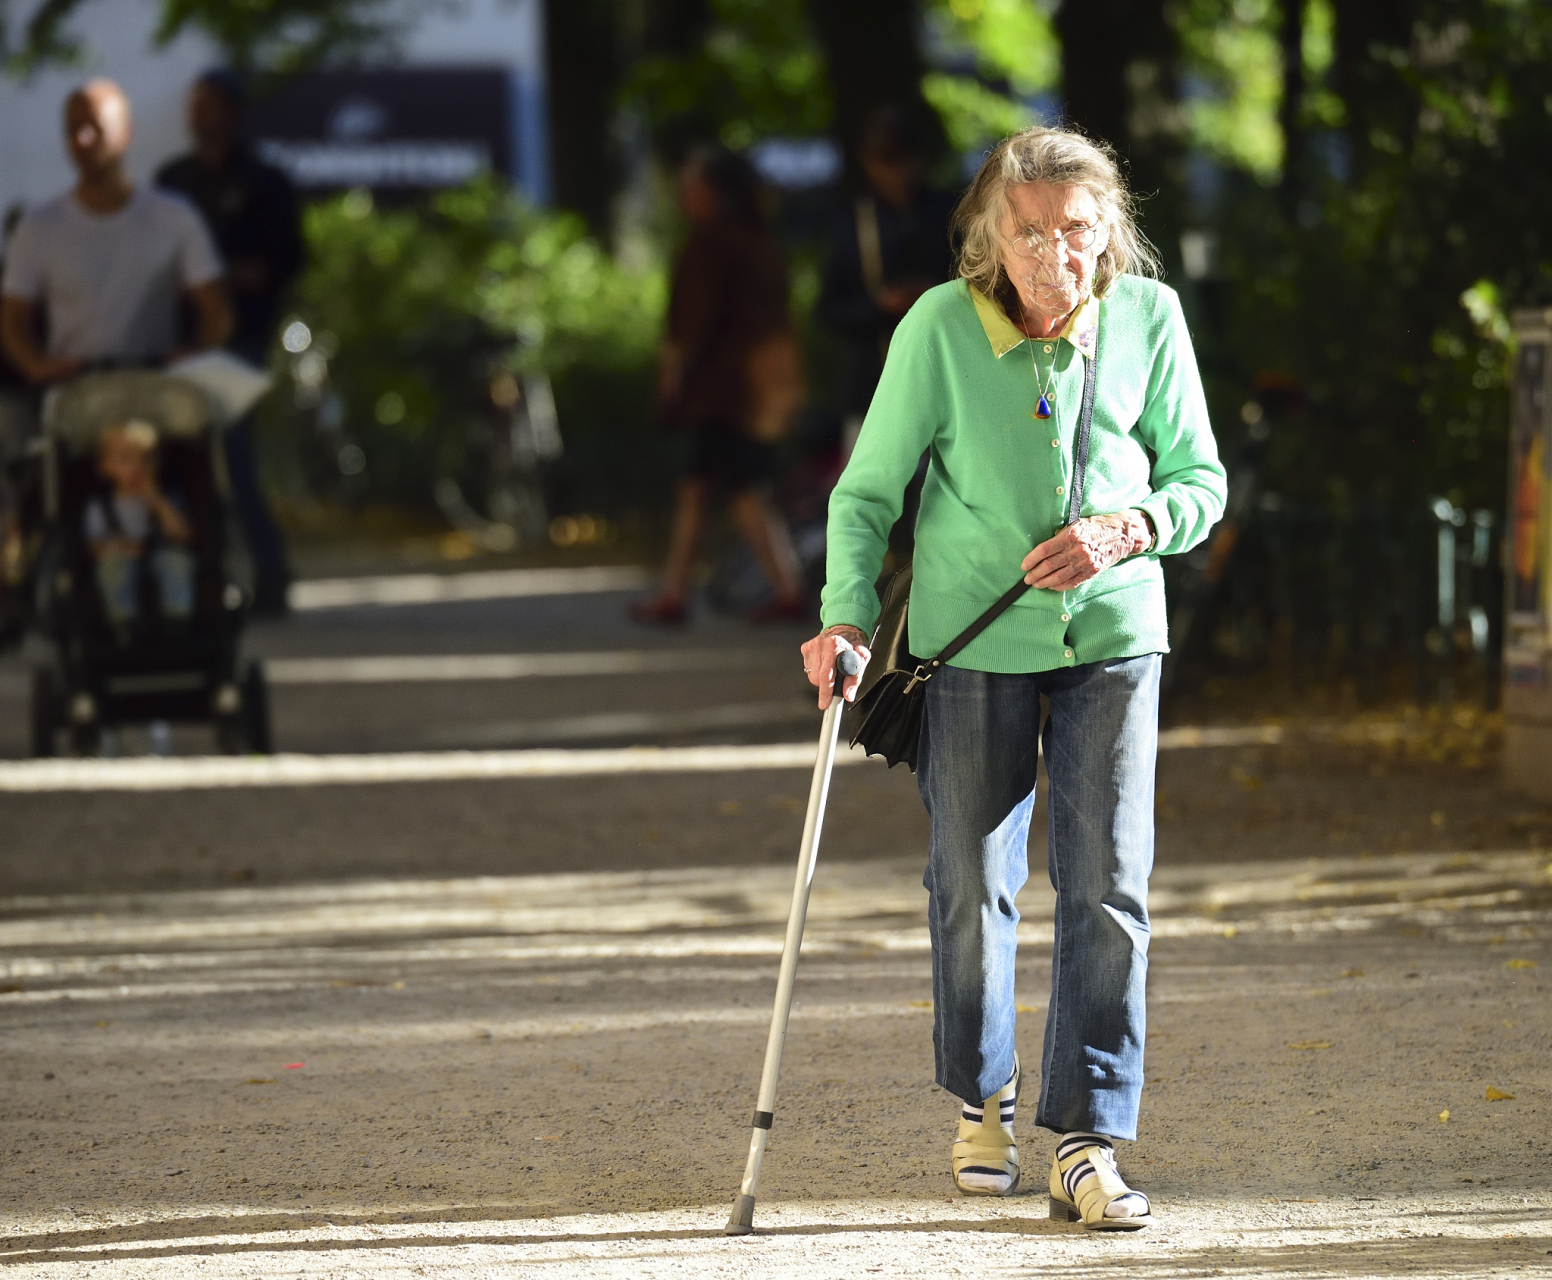 偏瘫患者通过简单的多走路去康复锻炼,不可否认确实有走好的,确市有